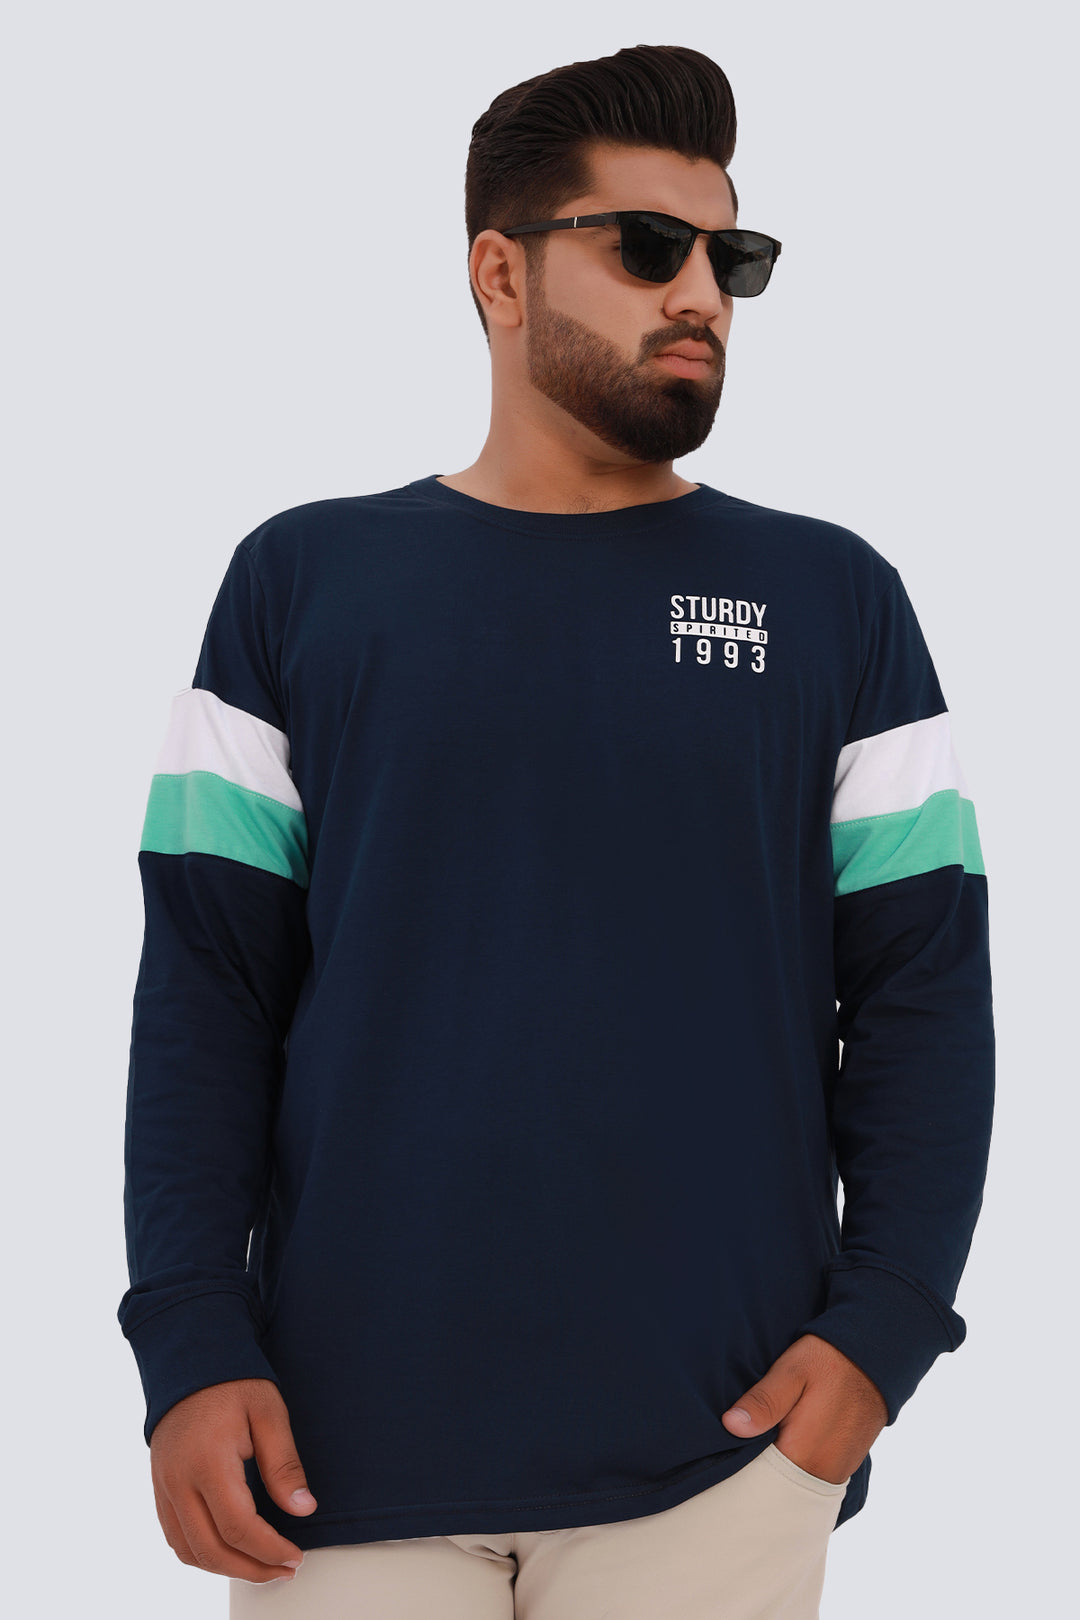 Sturdy Spirited Blue T-Shirt (Plus Size) - W22 - MT0213P